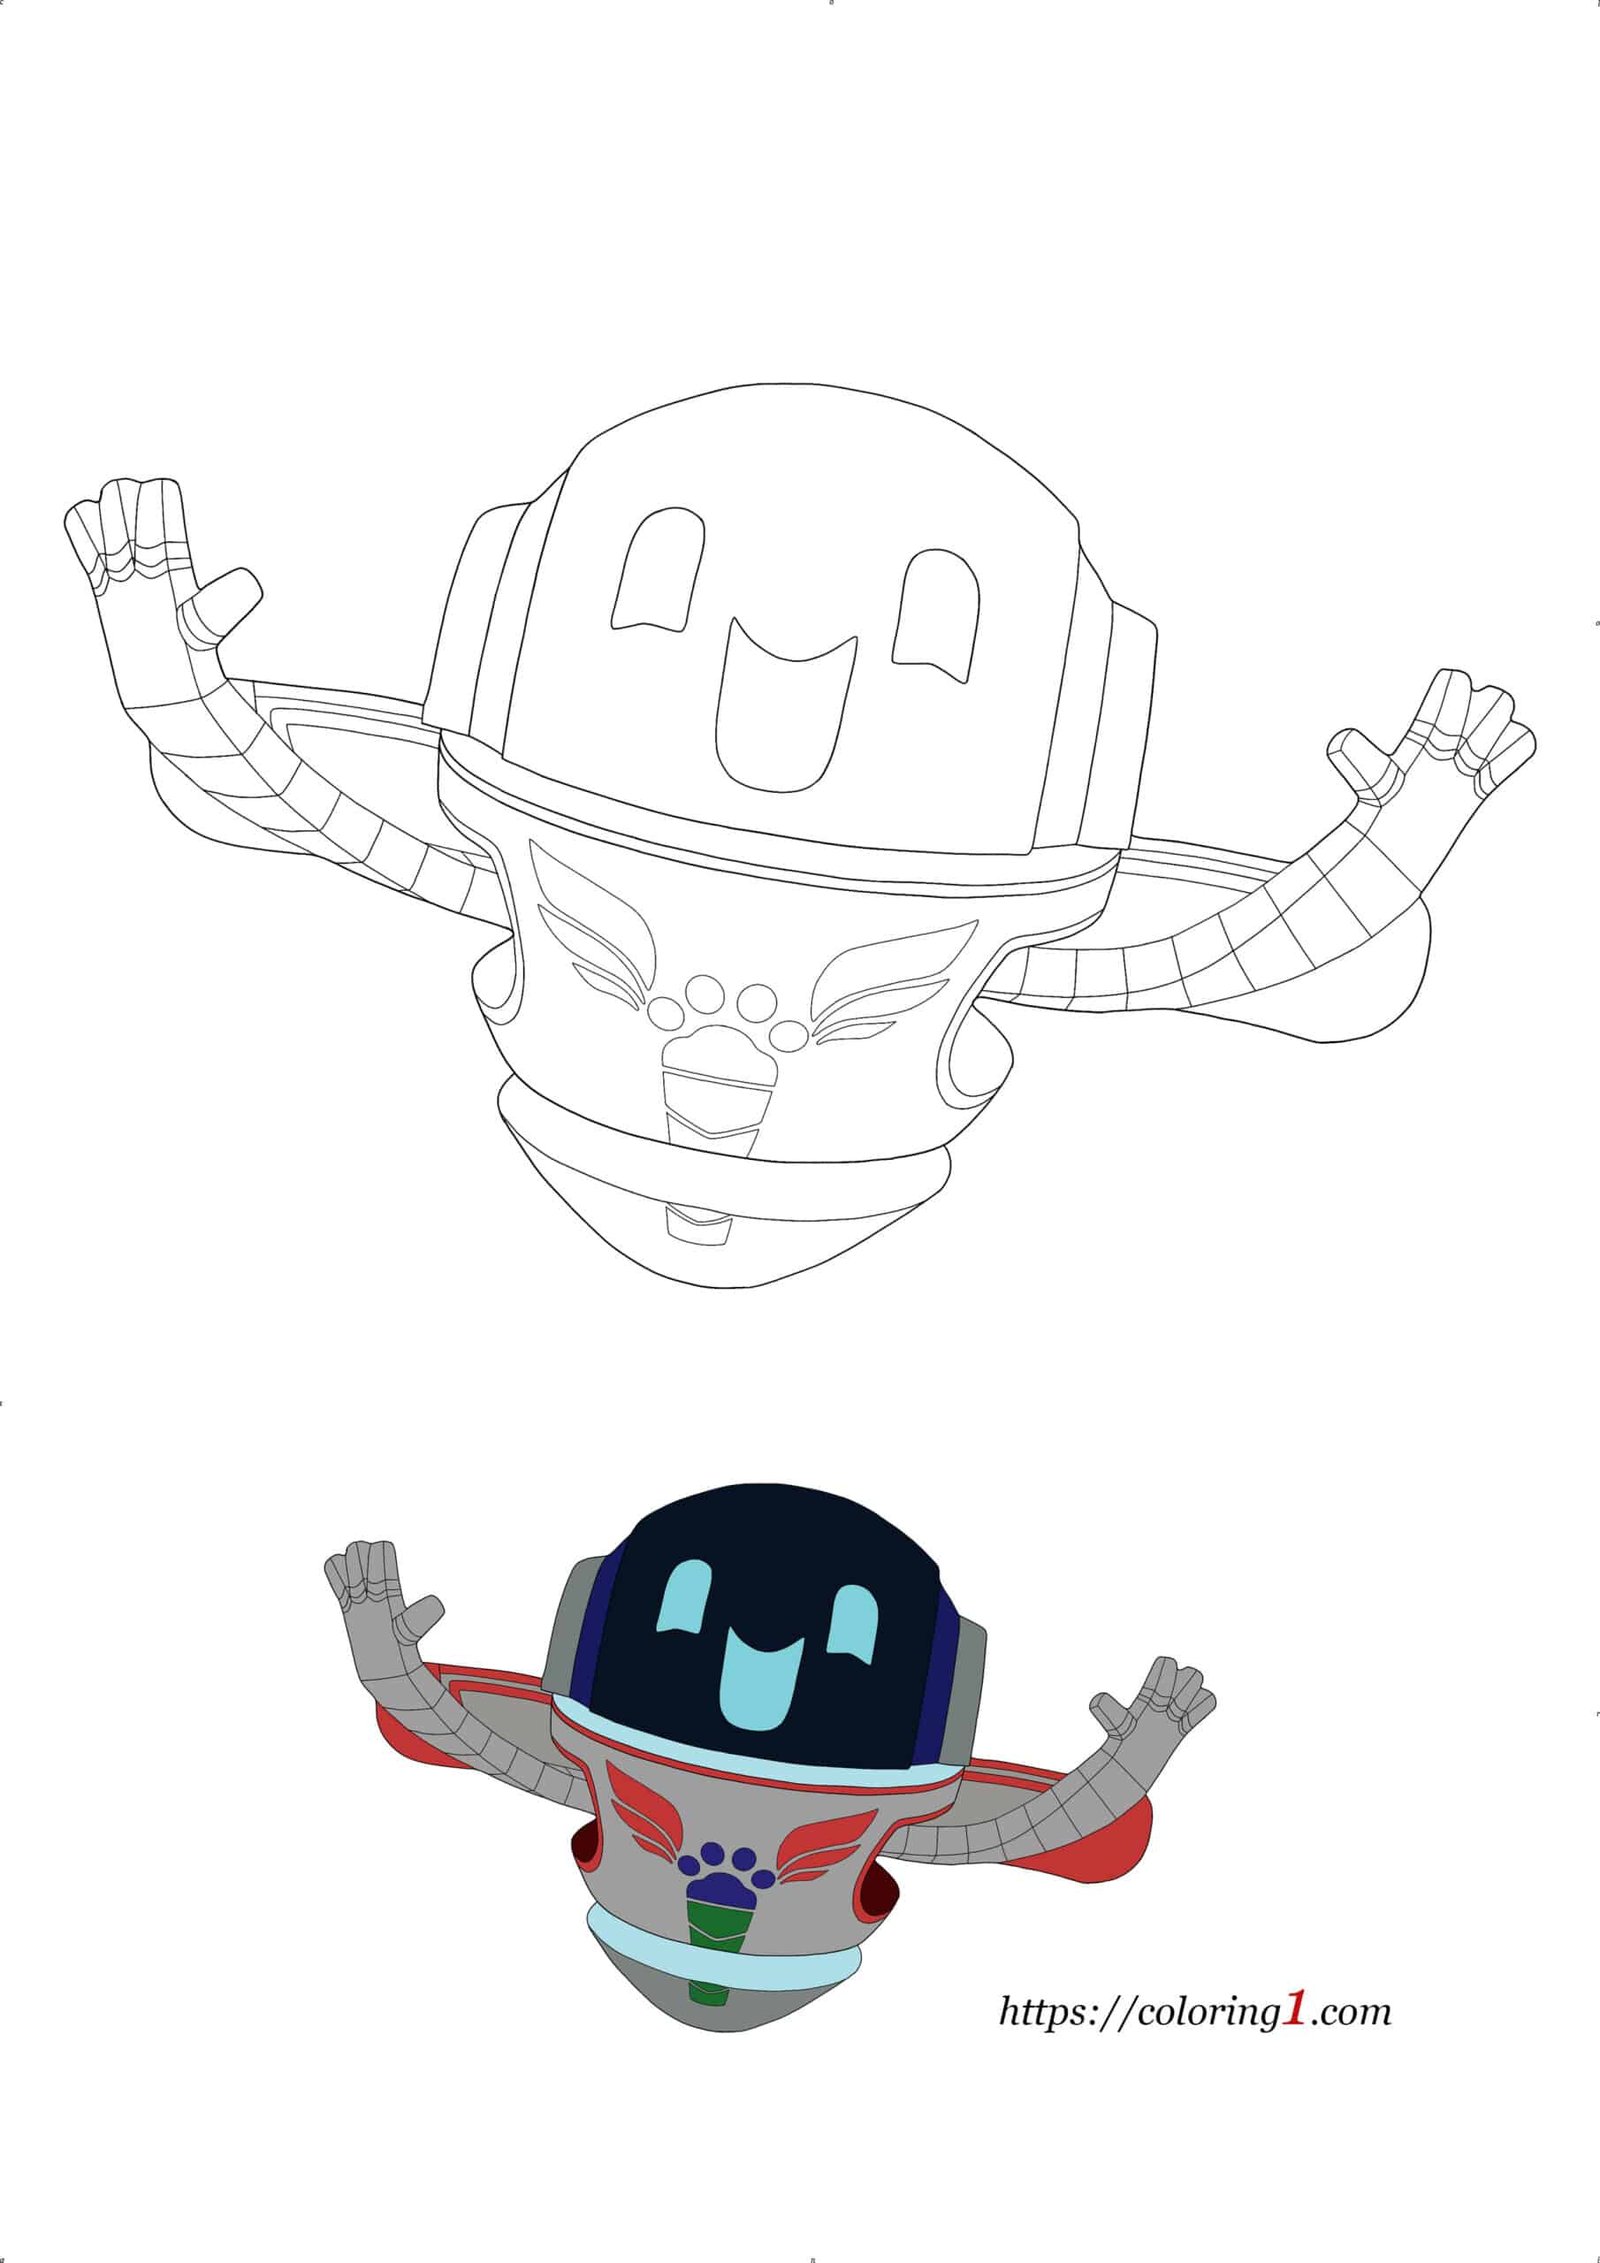 Pj Masks Robot Disney coloring page for kids